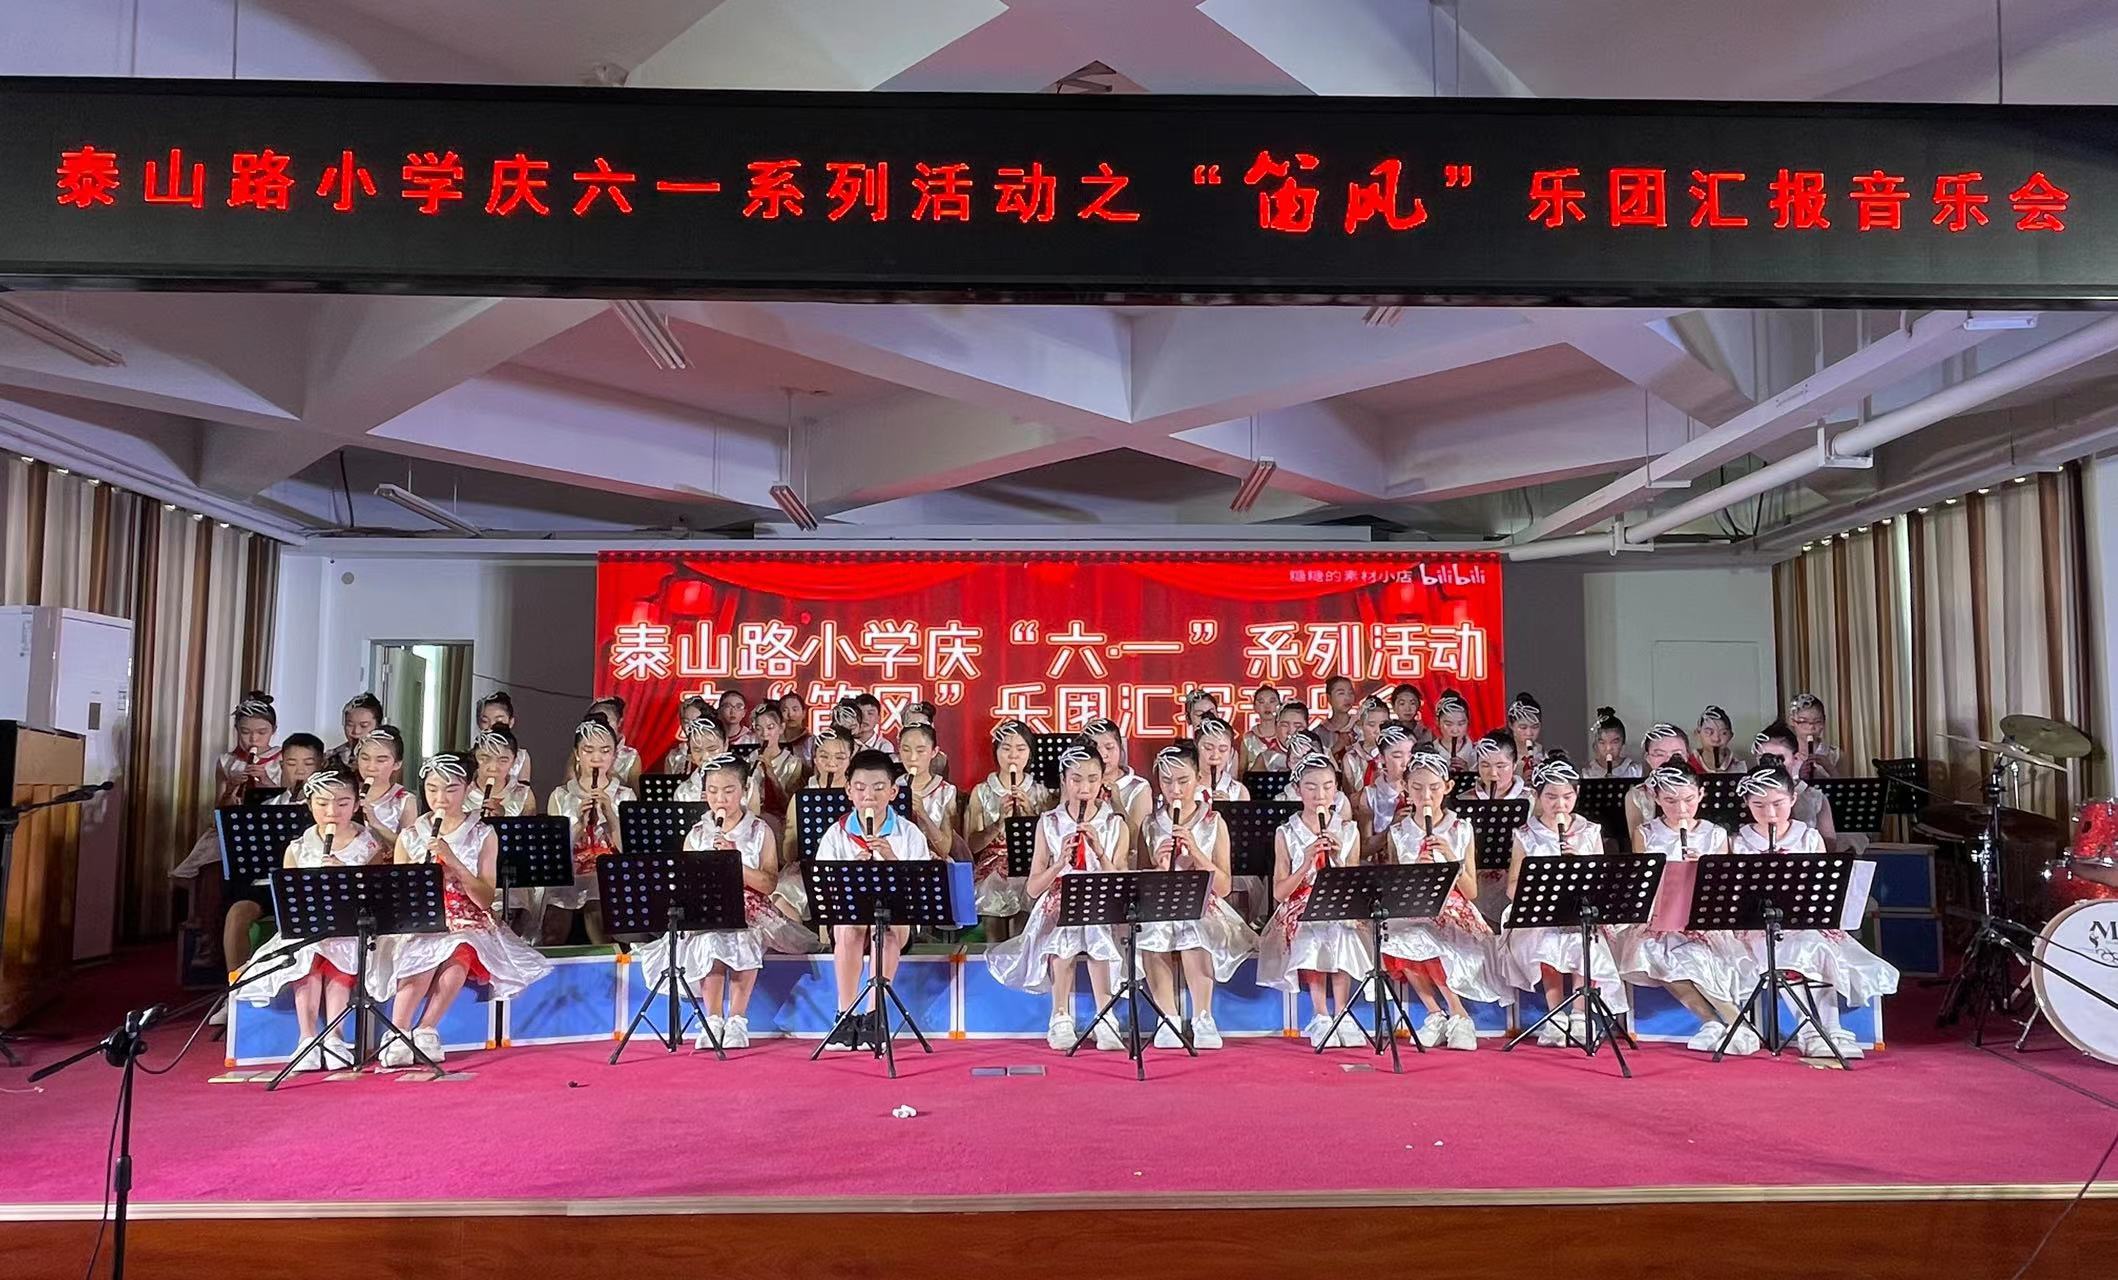 薛城区泰山路小学庆“六一”系列活动之“笛风”音乐会圆满成功